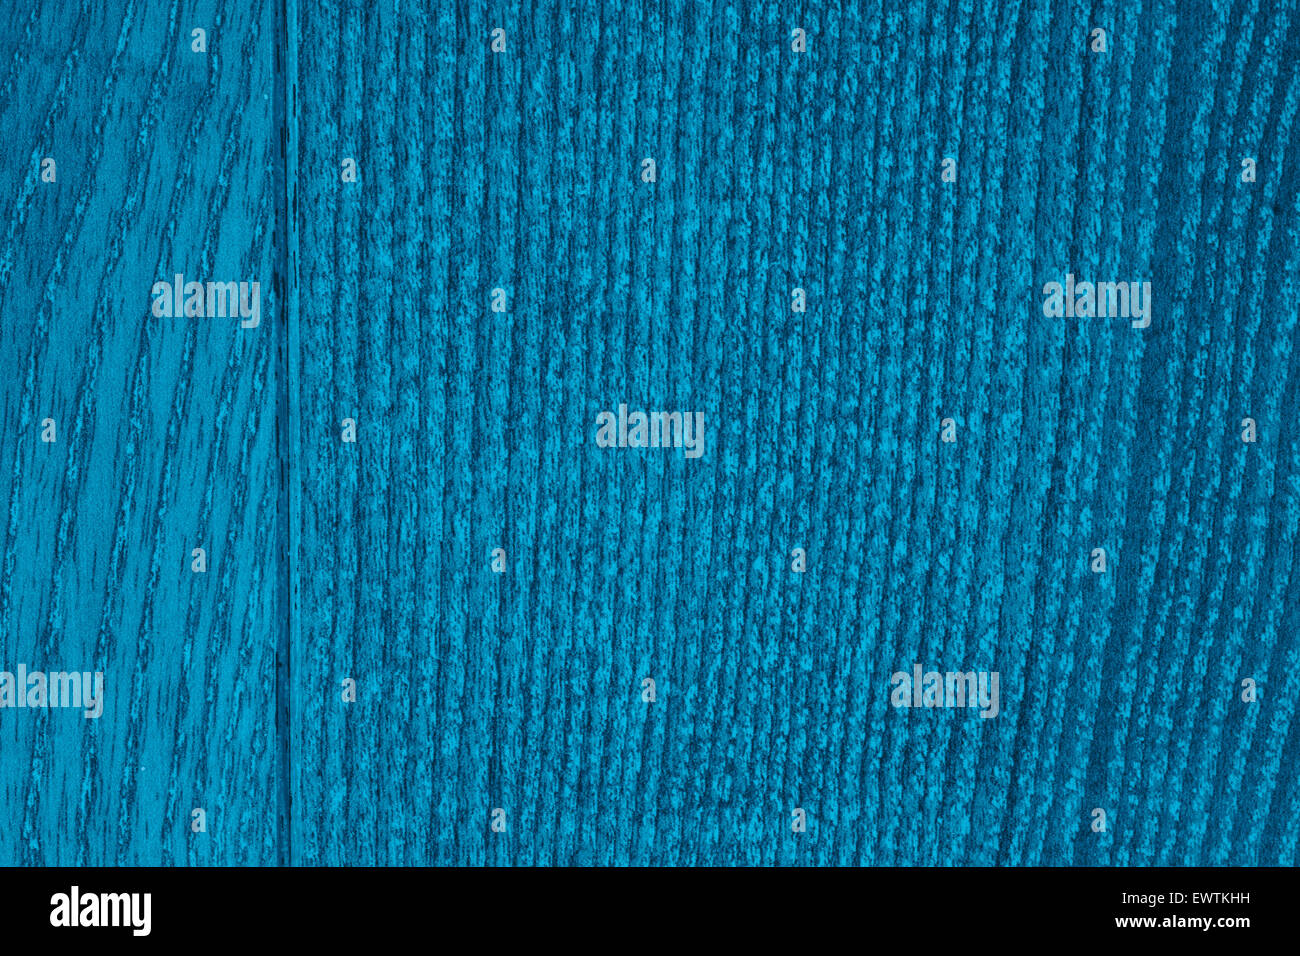 Texture de grain de bois de chêne ou fond bleu turquoise avec marge Banque D'Images